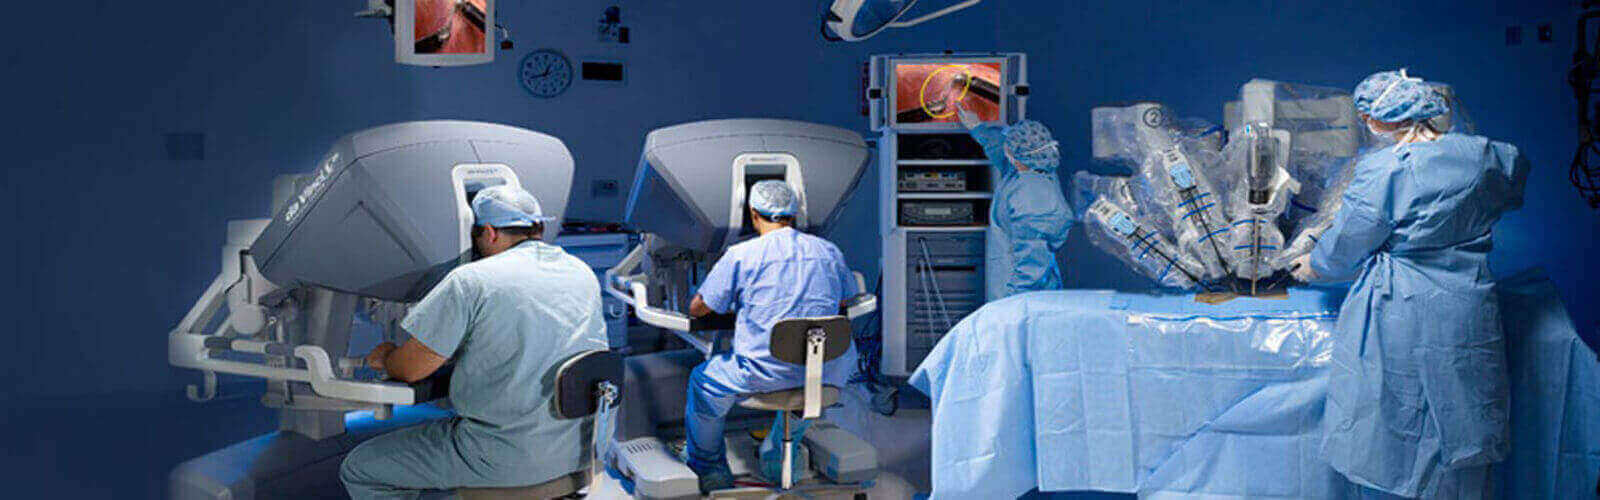 Robotic Surgery in Yemen